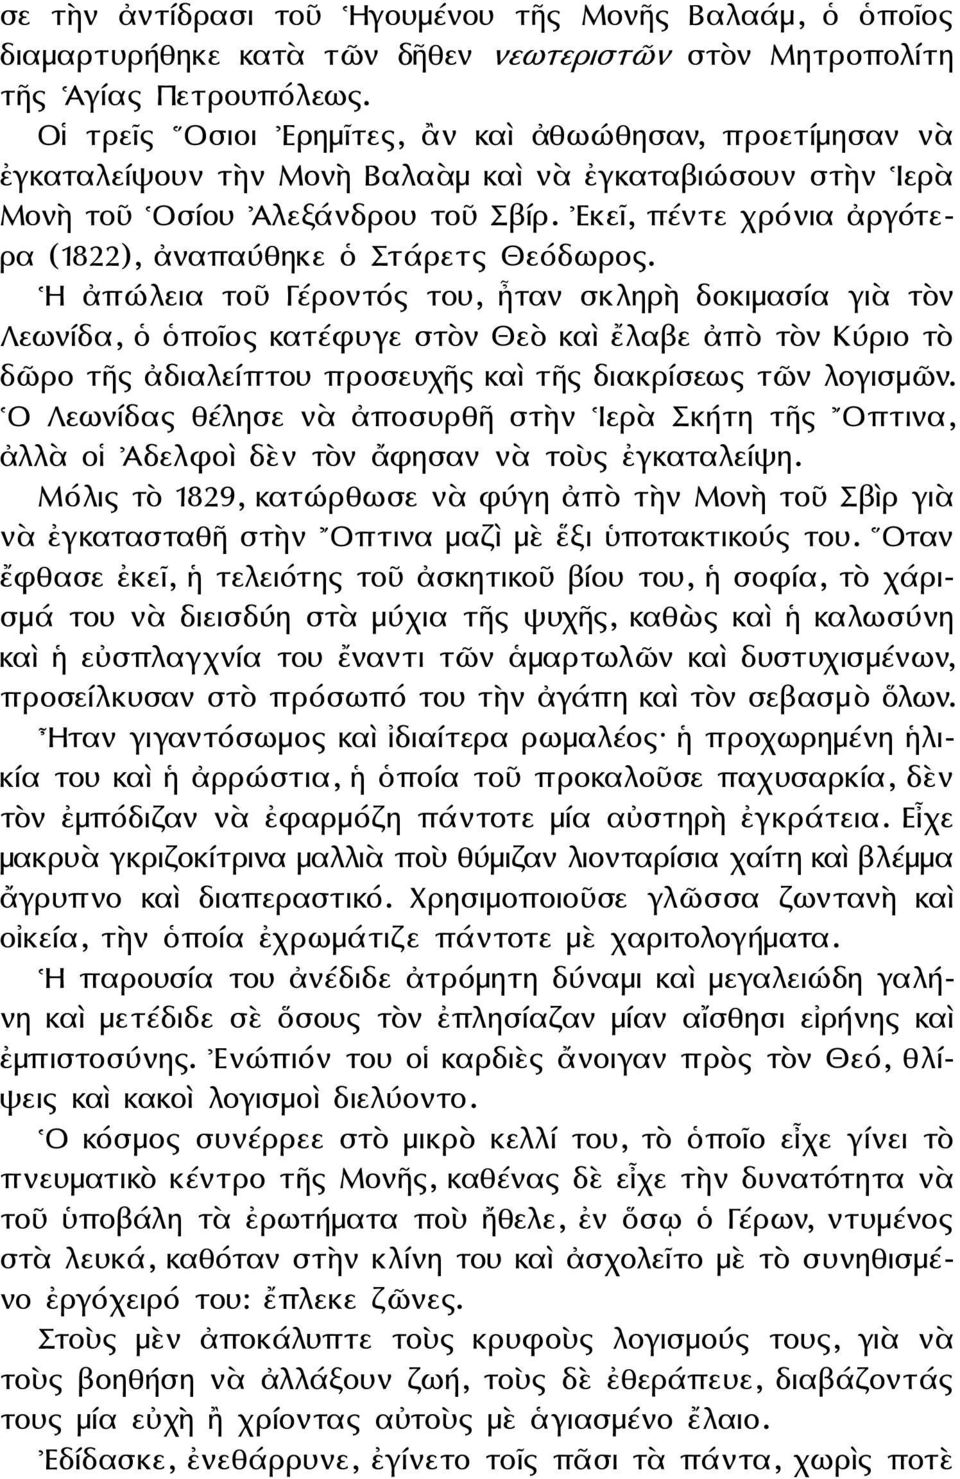 Εκεῖ, πέντε χρόνια ἀργότερα (1822), ἀναπαύθηκε ὁ Στάρετς Θεόδωρος.